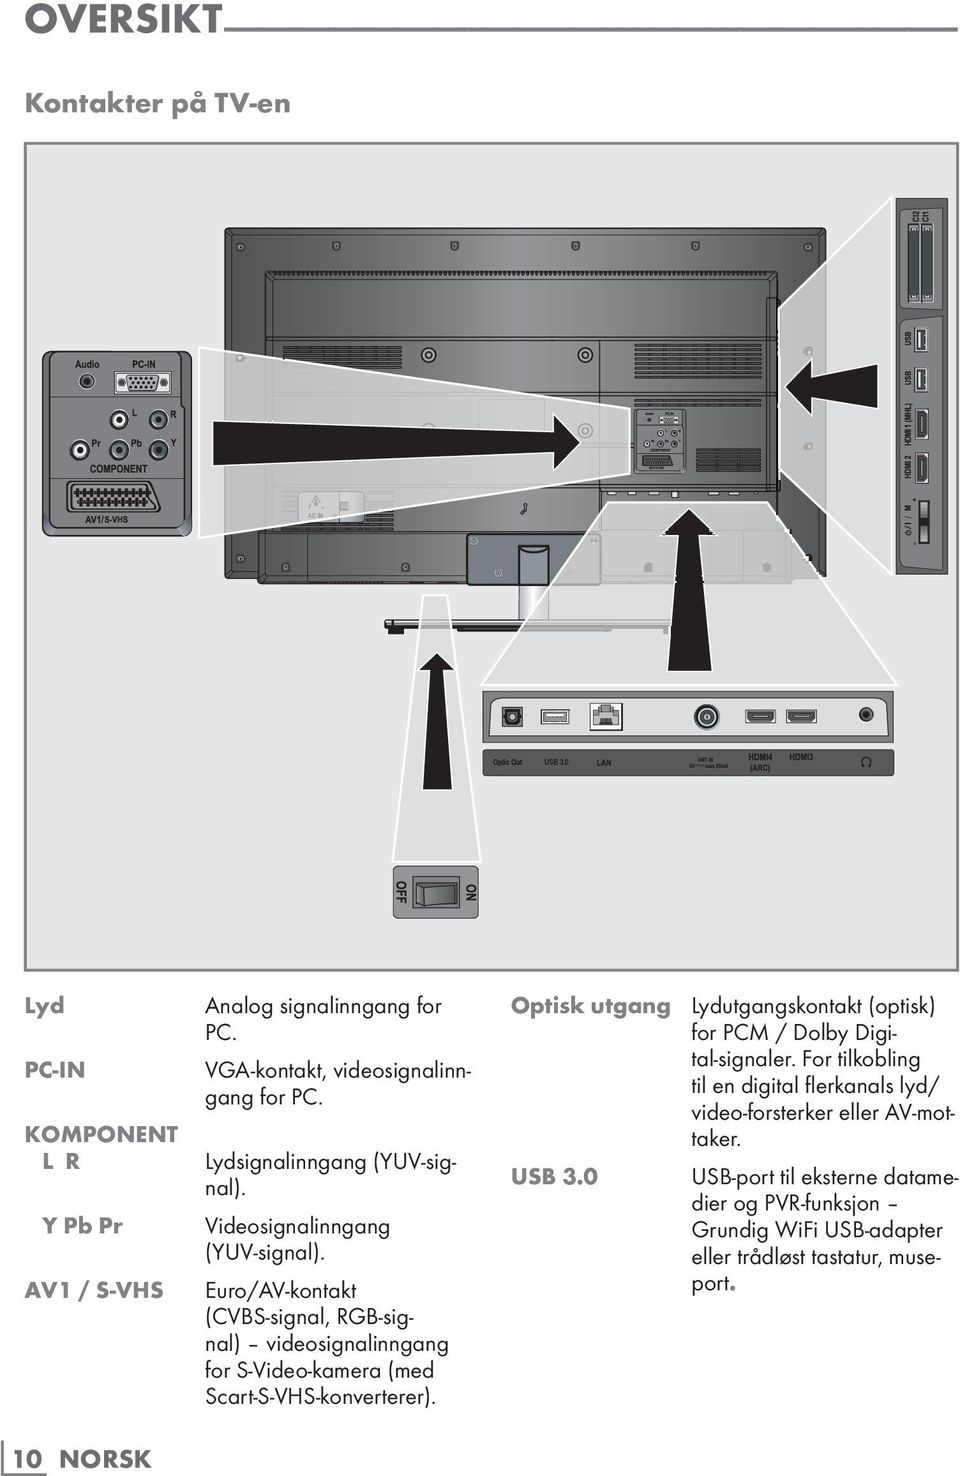 Videosignalinngang (YUV-signal). Euro/AV-kontakt (CVBS-signal, RGB-signal) videosignalinngang for S-Video-kamera (med Scart-S-VHS-konverterer).